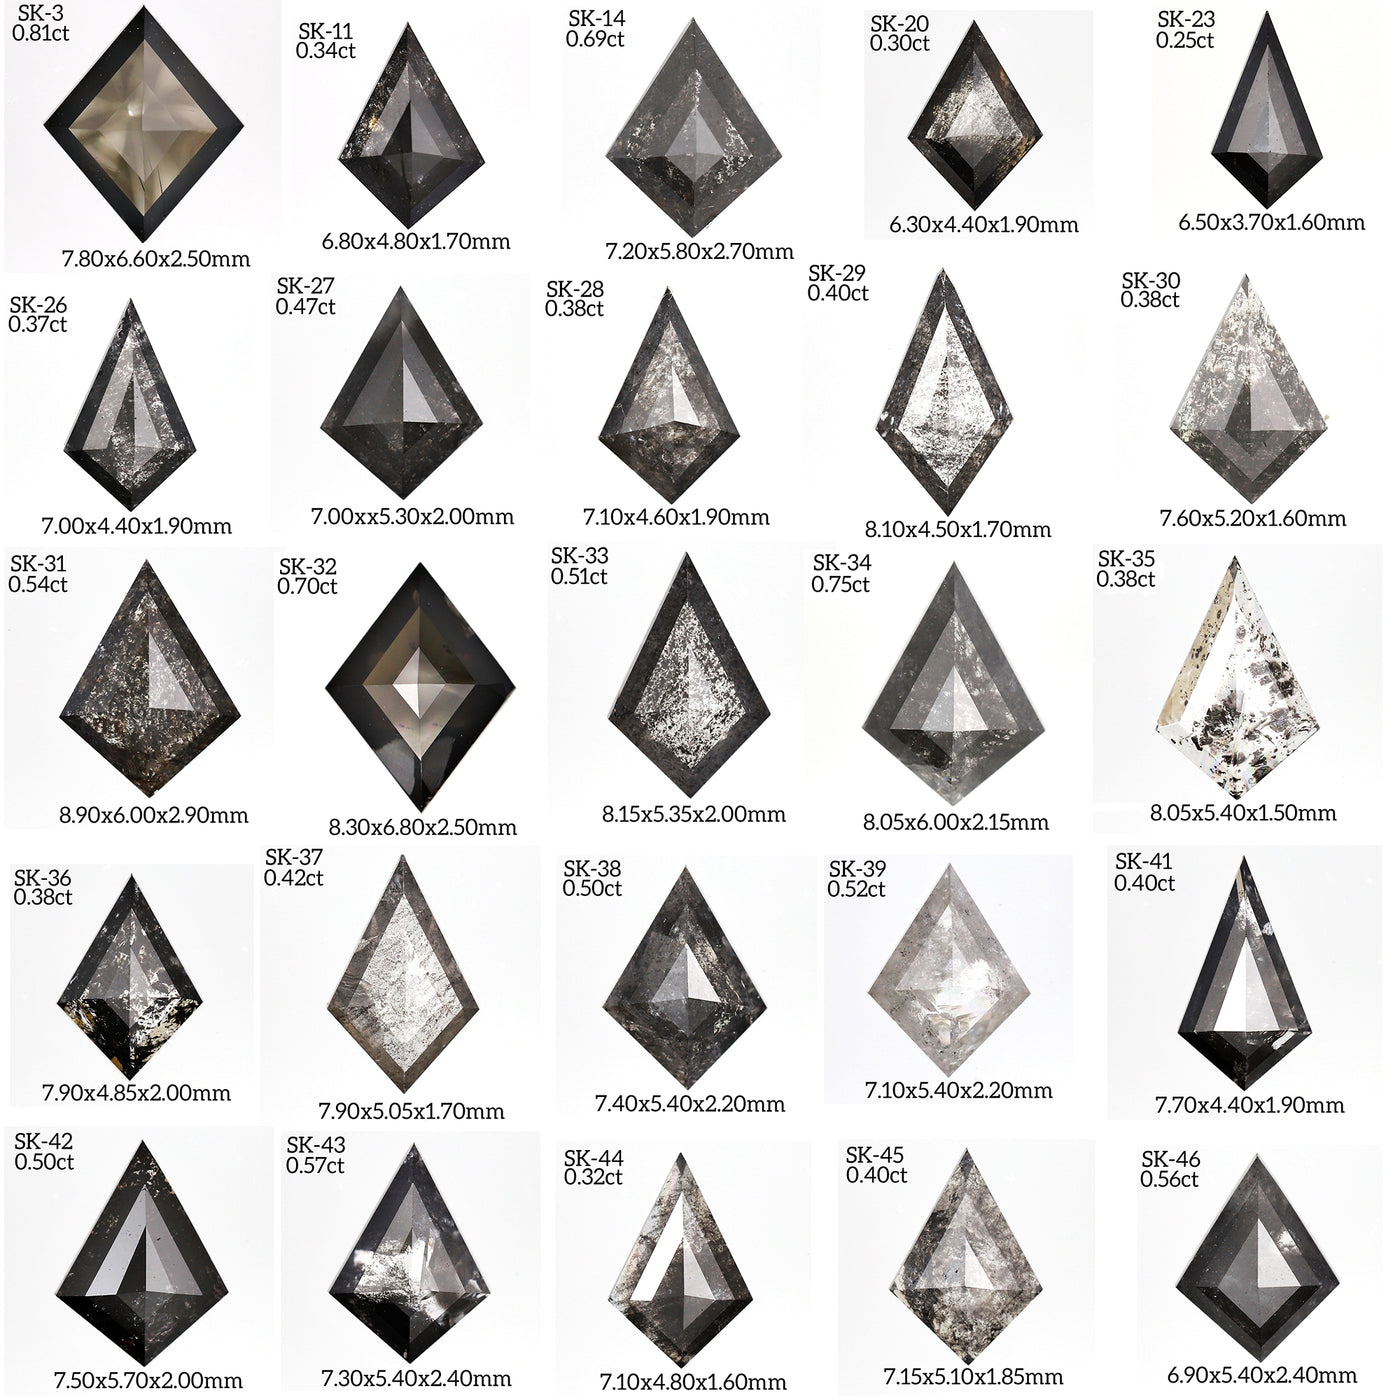 SK61 - Salt and pepper kite diamond